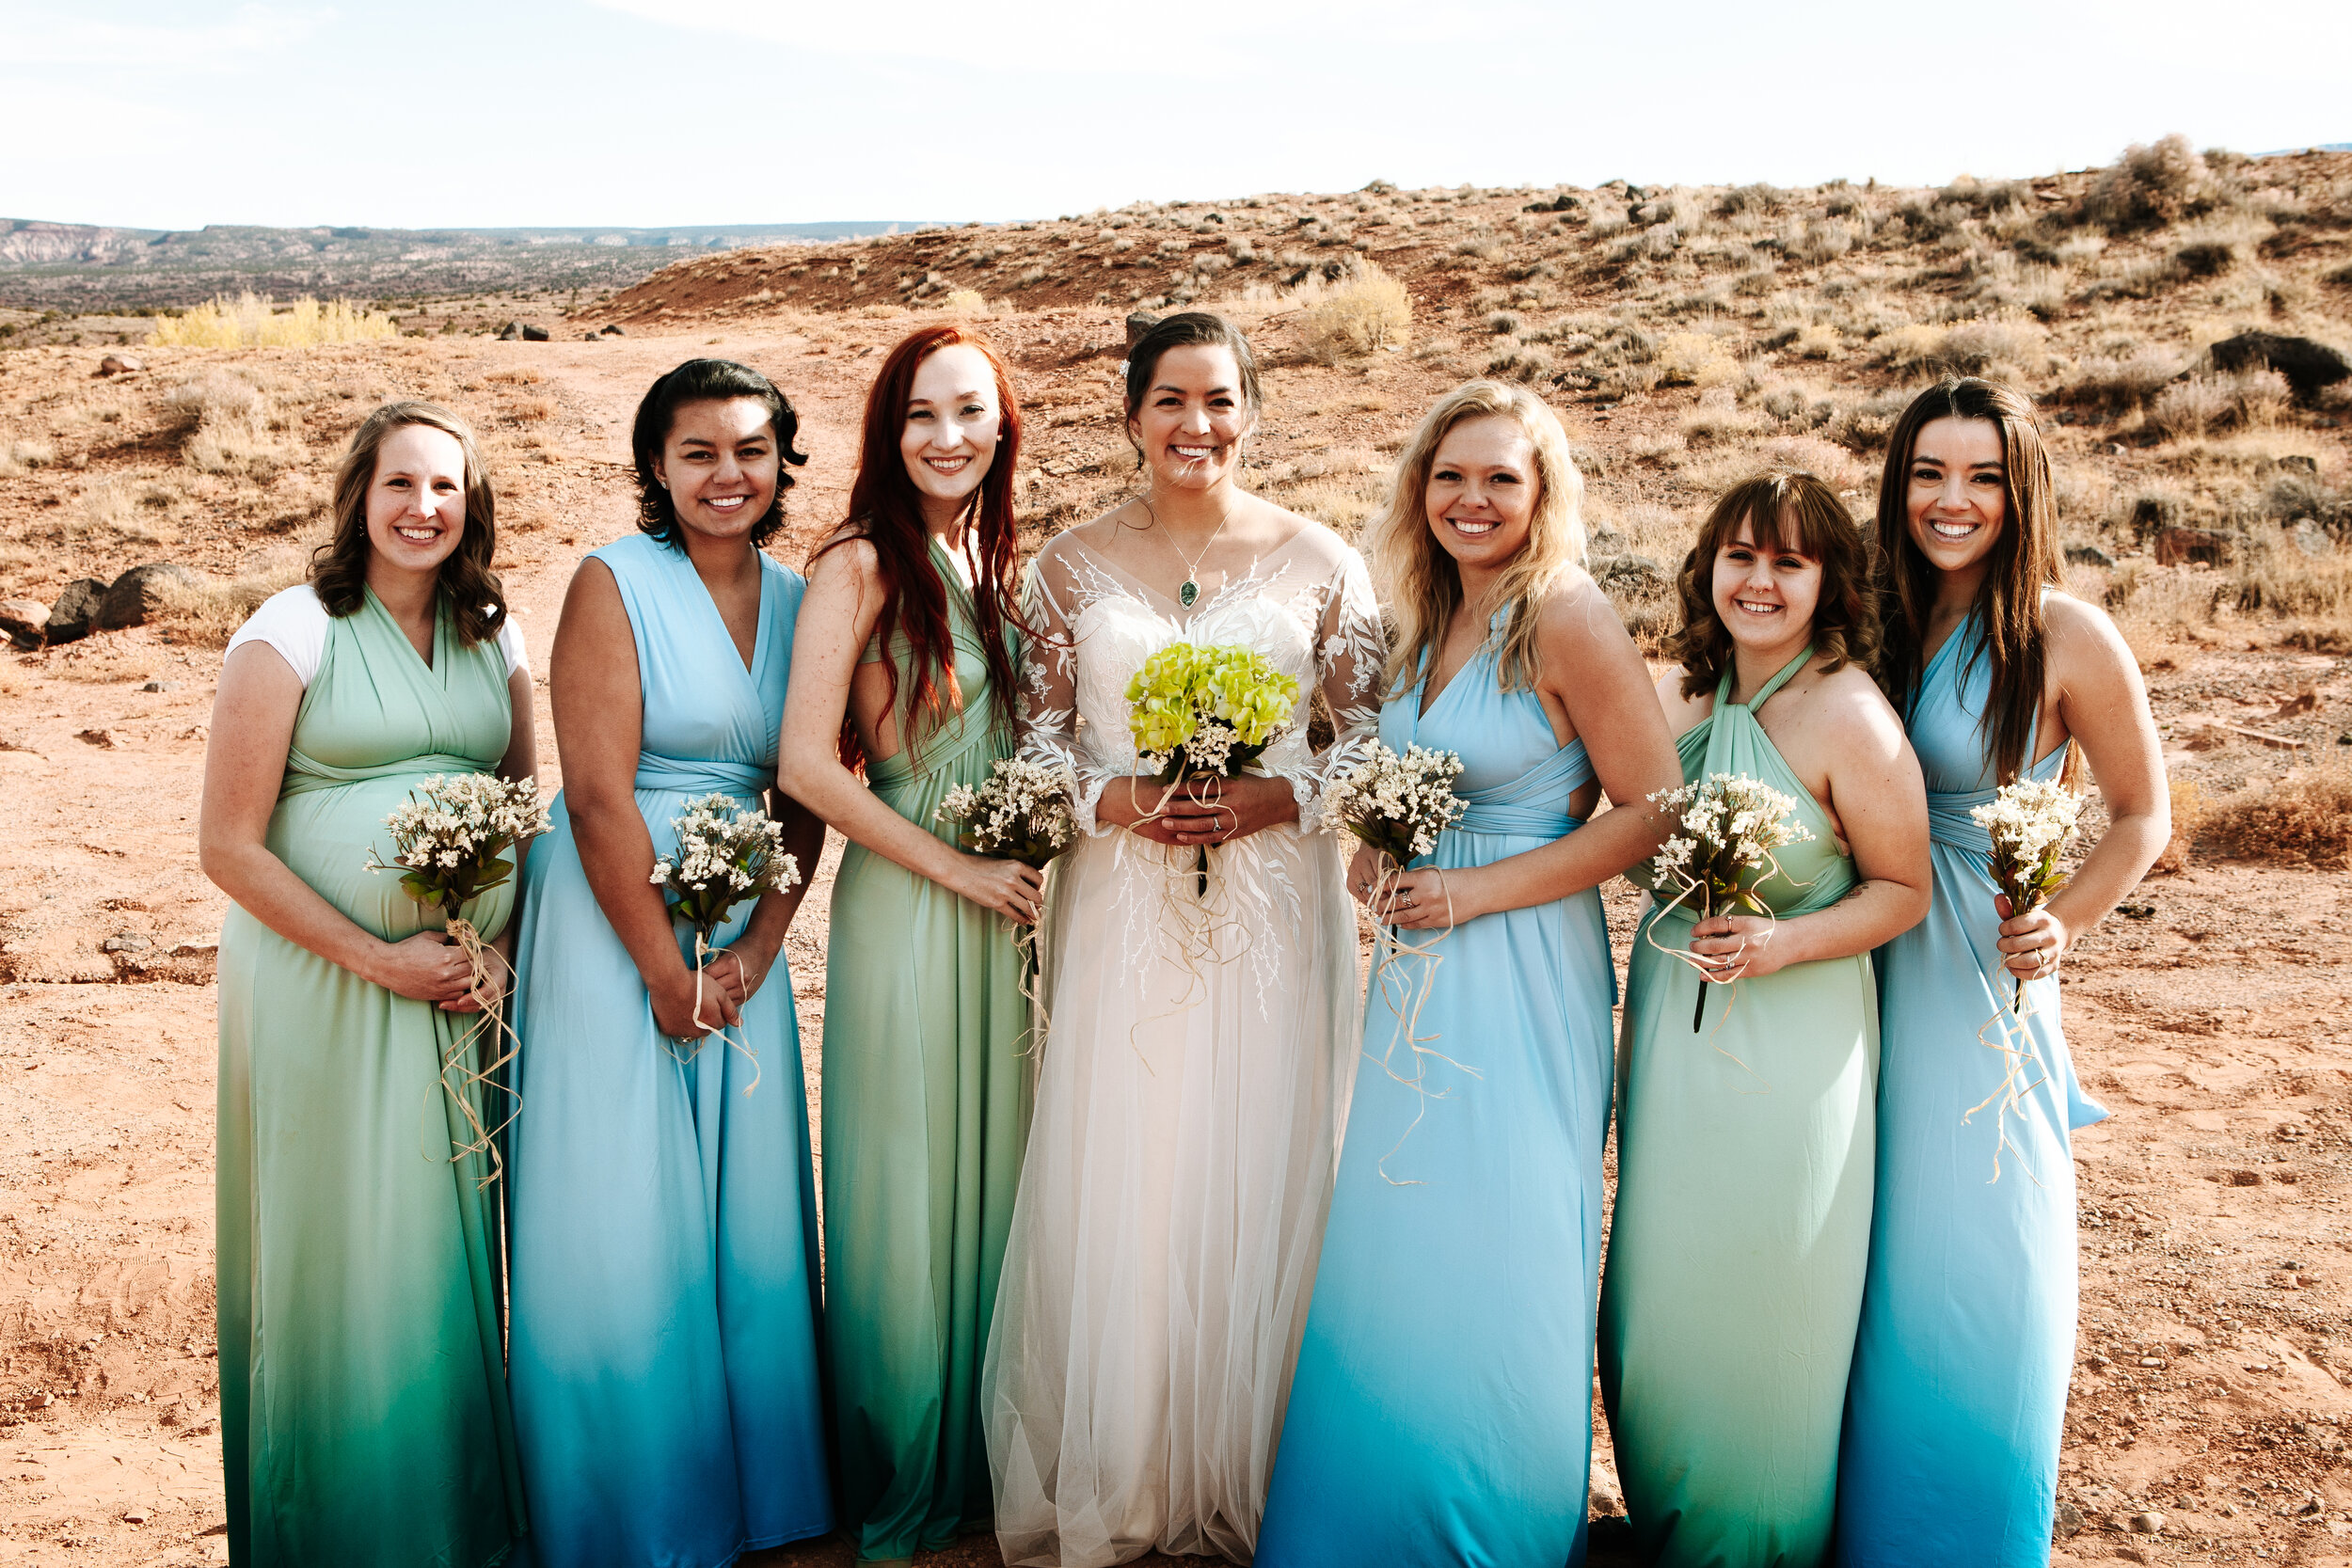 Wedding party in Moab, Utah.